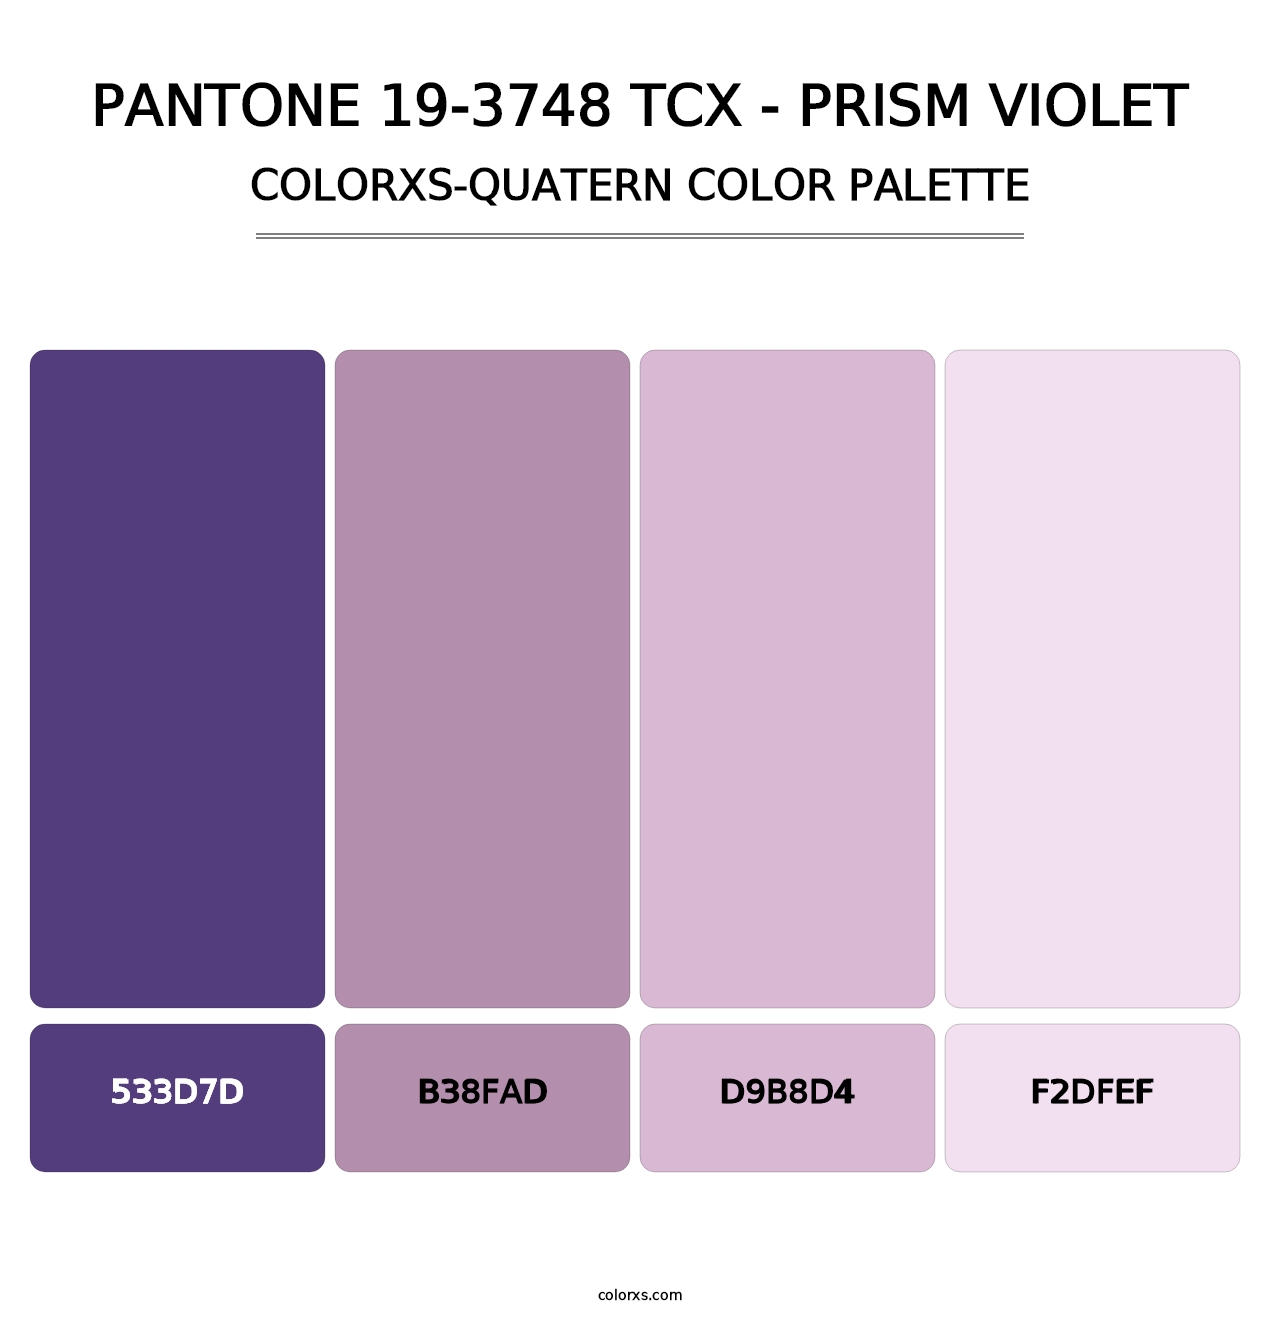 PANTONE 19-3748 TCX - Prism Violet - Colorxs Quatern Palette